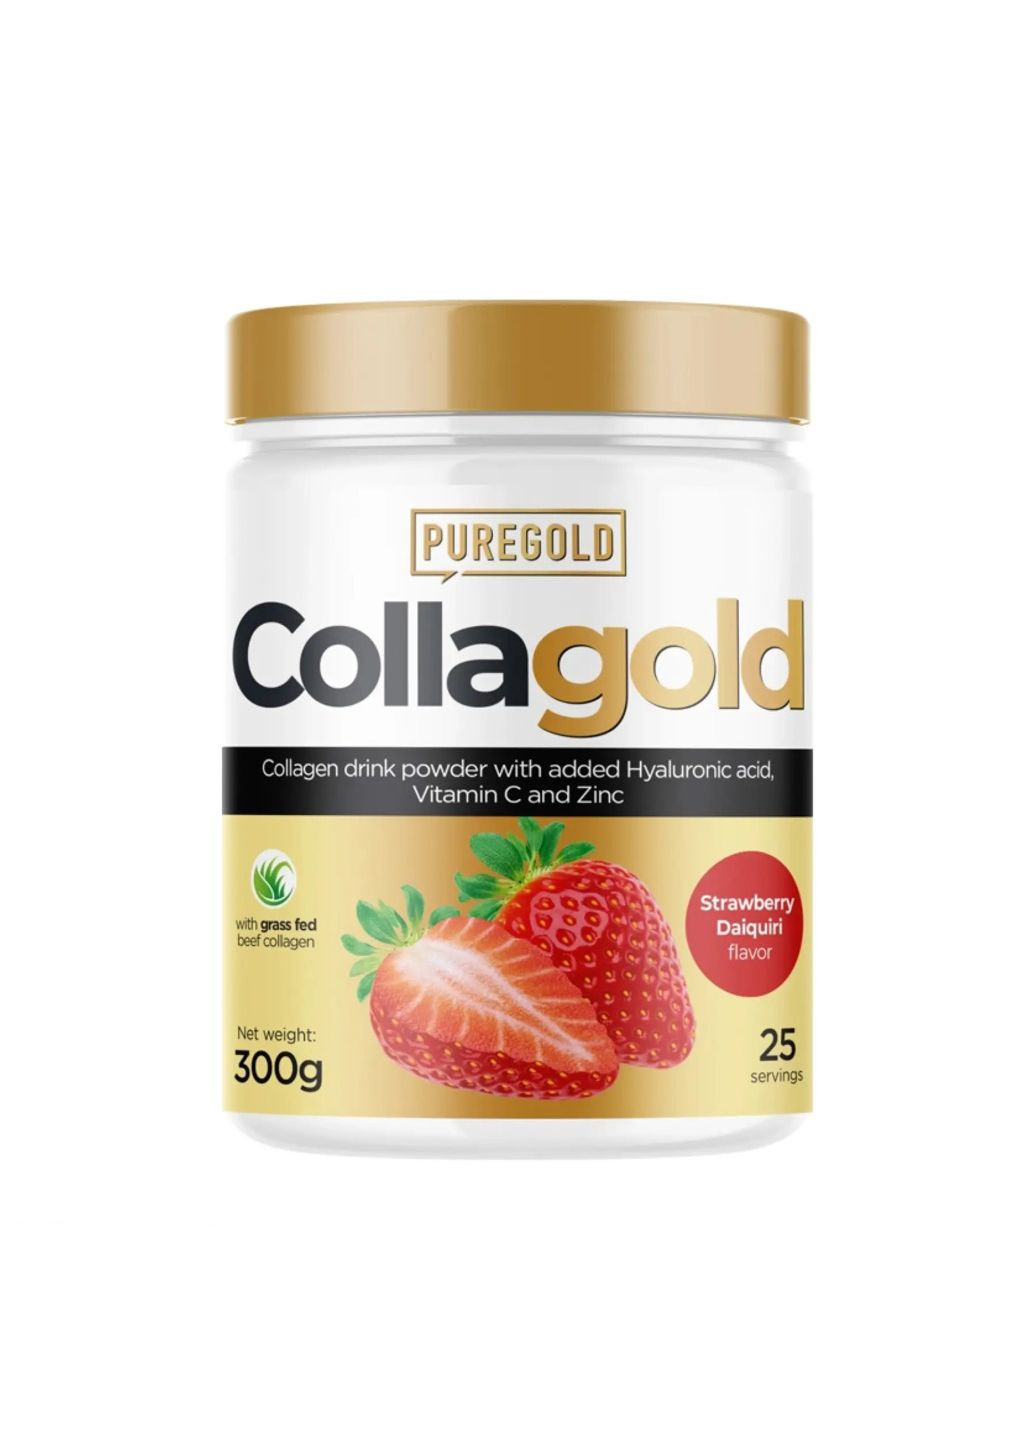 Collagold - 300g Strawberry Daiquiri (клубничный коктейль) коллагеновый порошок с гиалуроновой кислотой Pure Gold Protein (292314743)